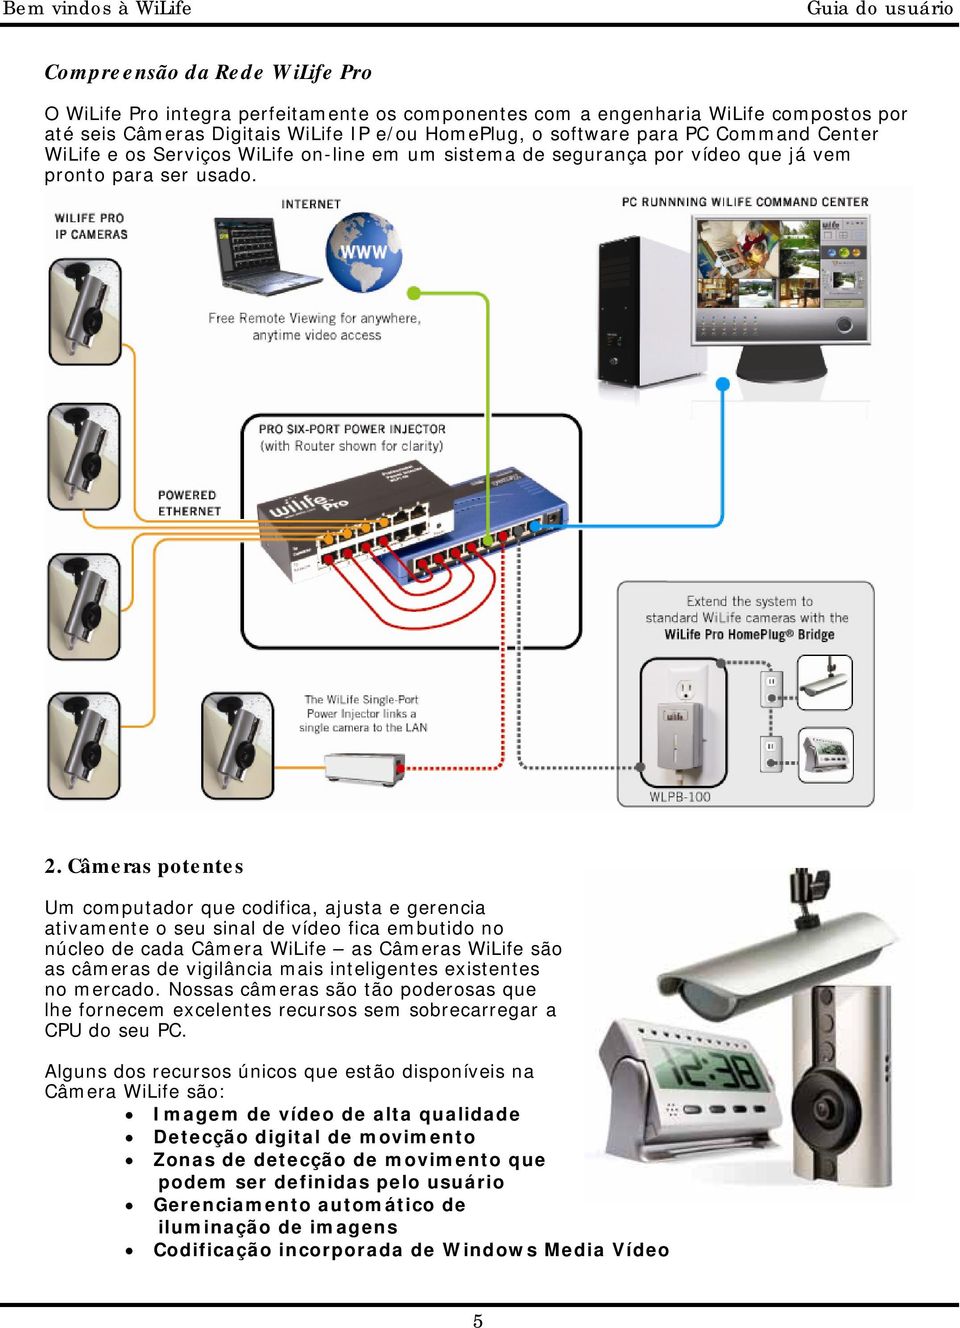 Câmeras potentes Um computador que codifica, ajusta e gerencia ativamente o seu sinal de vídeo fica embutido no núcleo de cada Câmera WiLife as Câmeras WiLife são as câmeras de vigilância mais